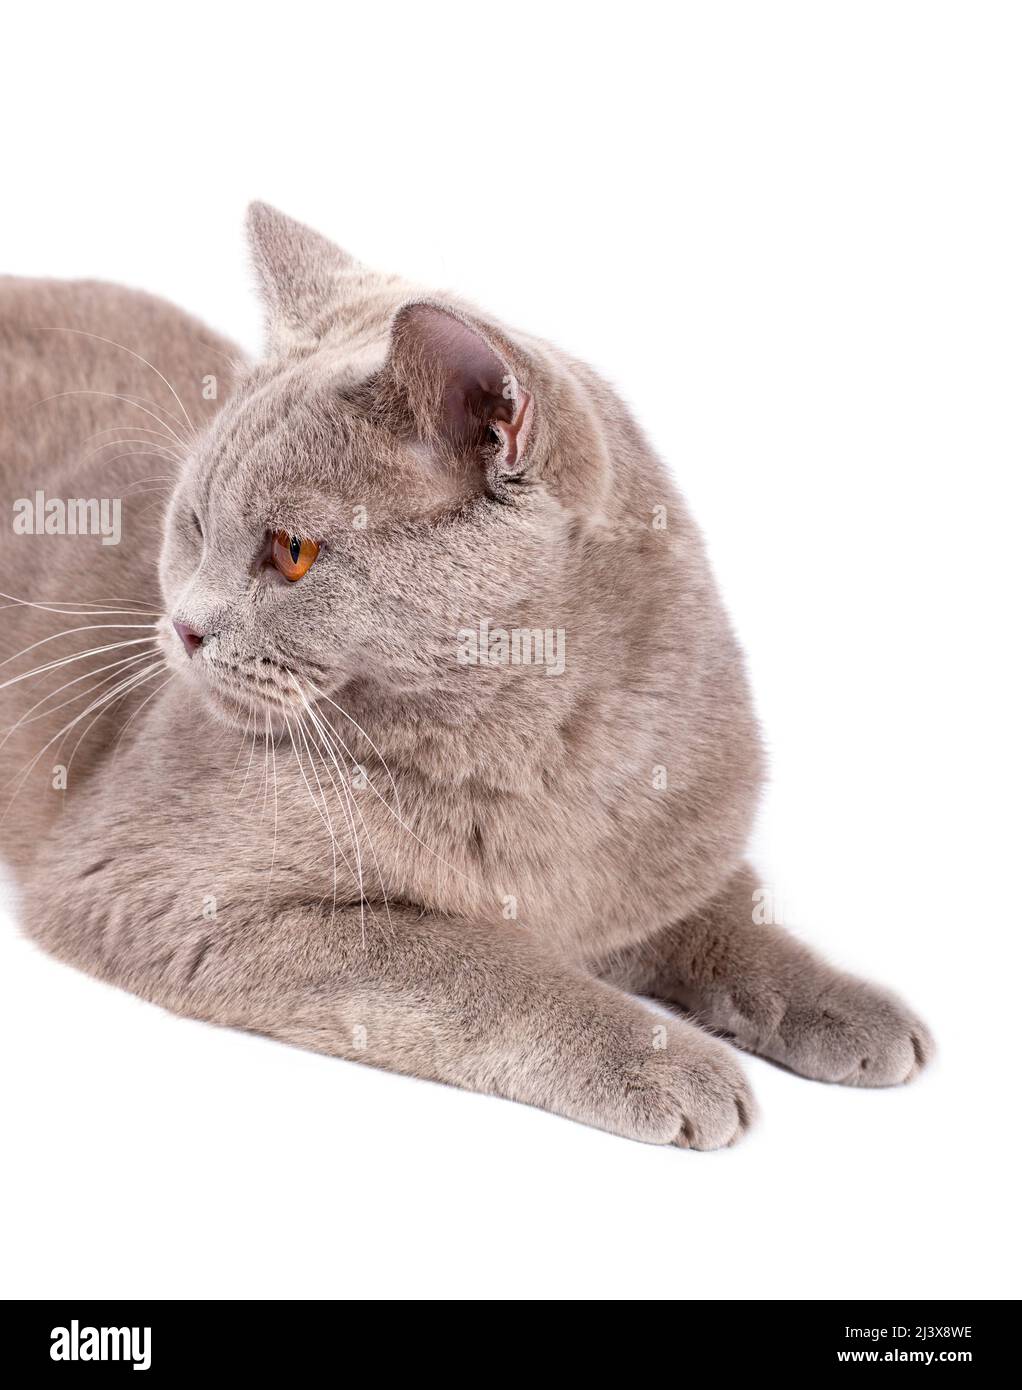 Ritratto laterale primo piano viso-muso gatto scozzese con occhi arancioni su sfondo bianco, immagine isolata, bellissimi gatti domestici, gatti in hou Foto Stock